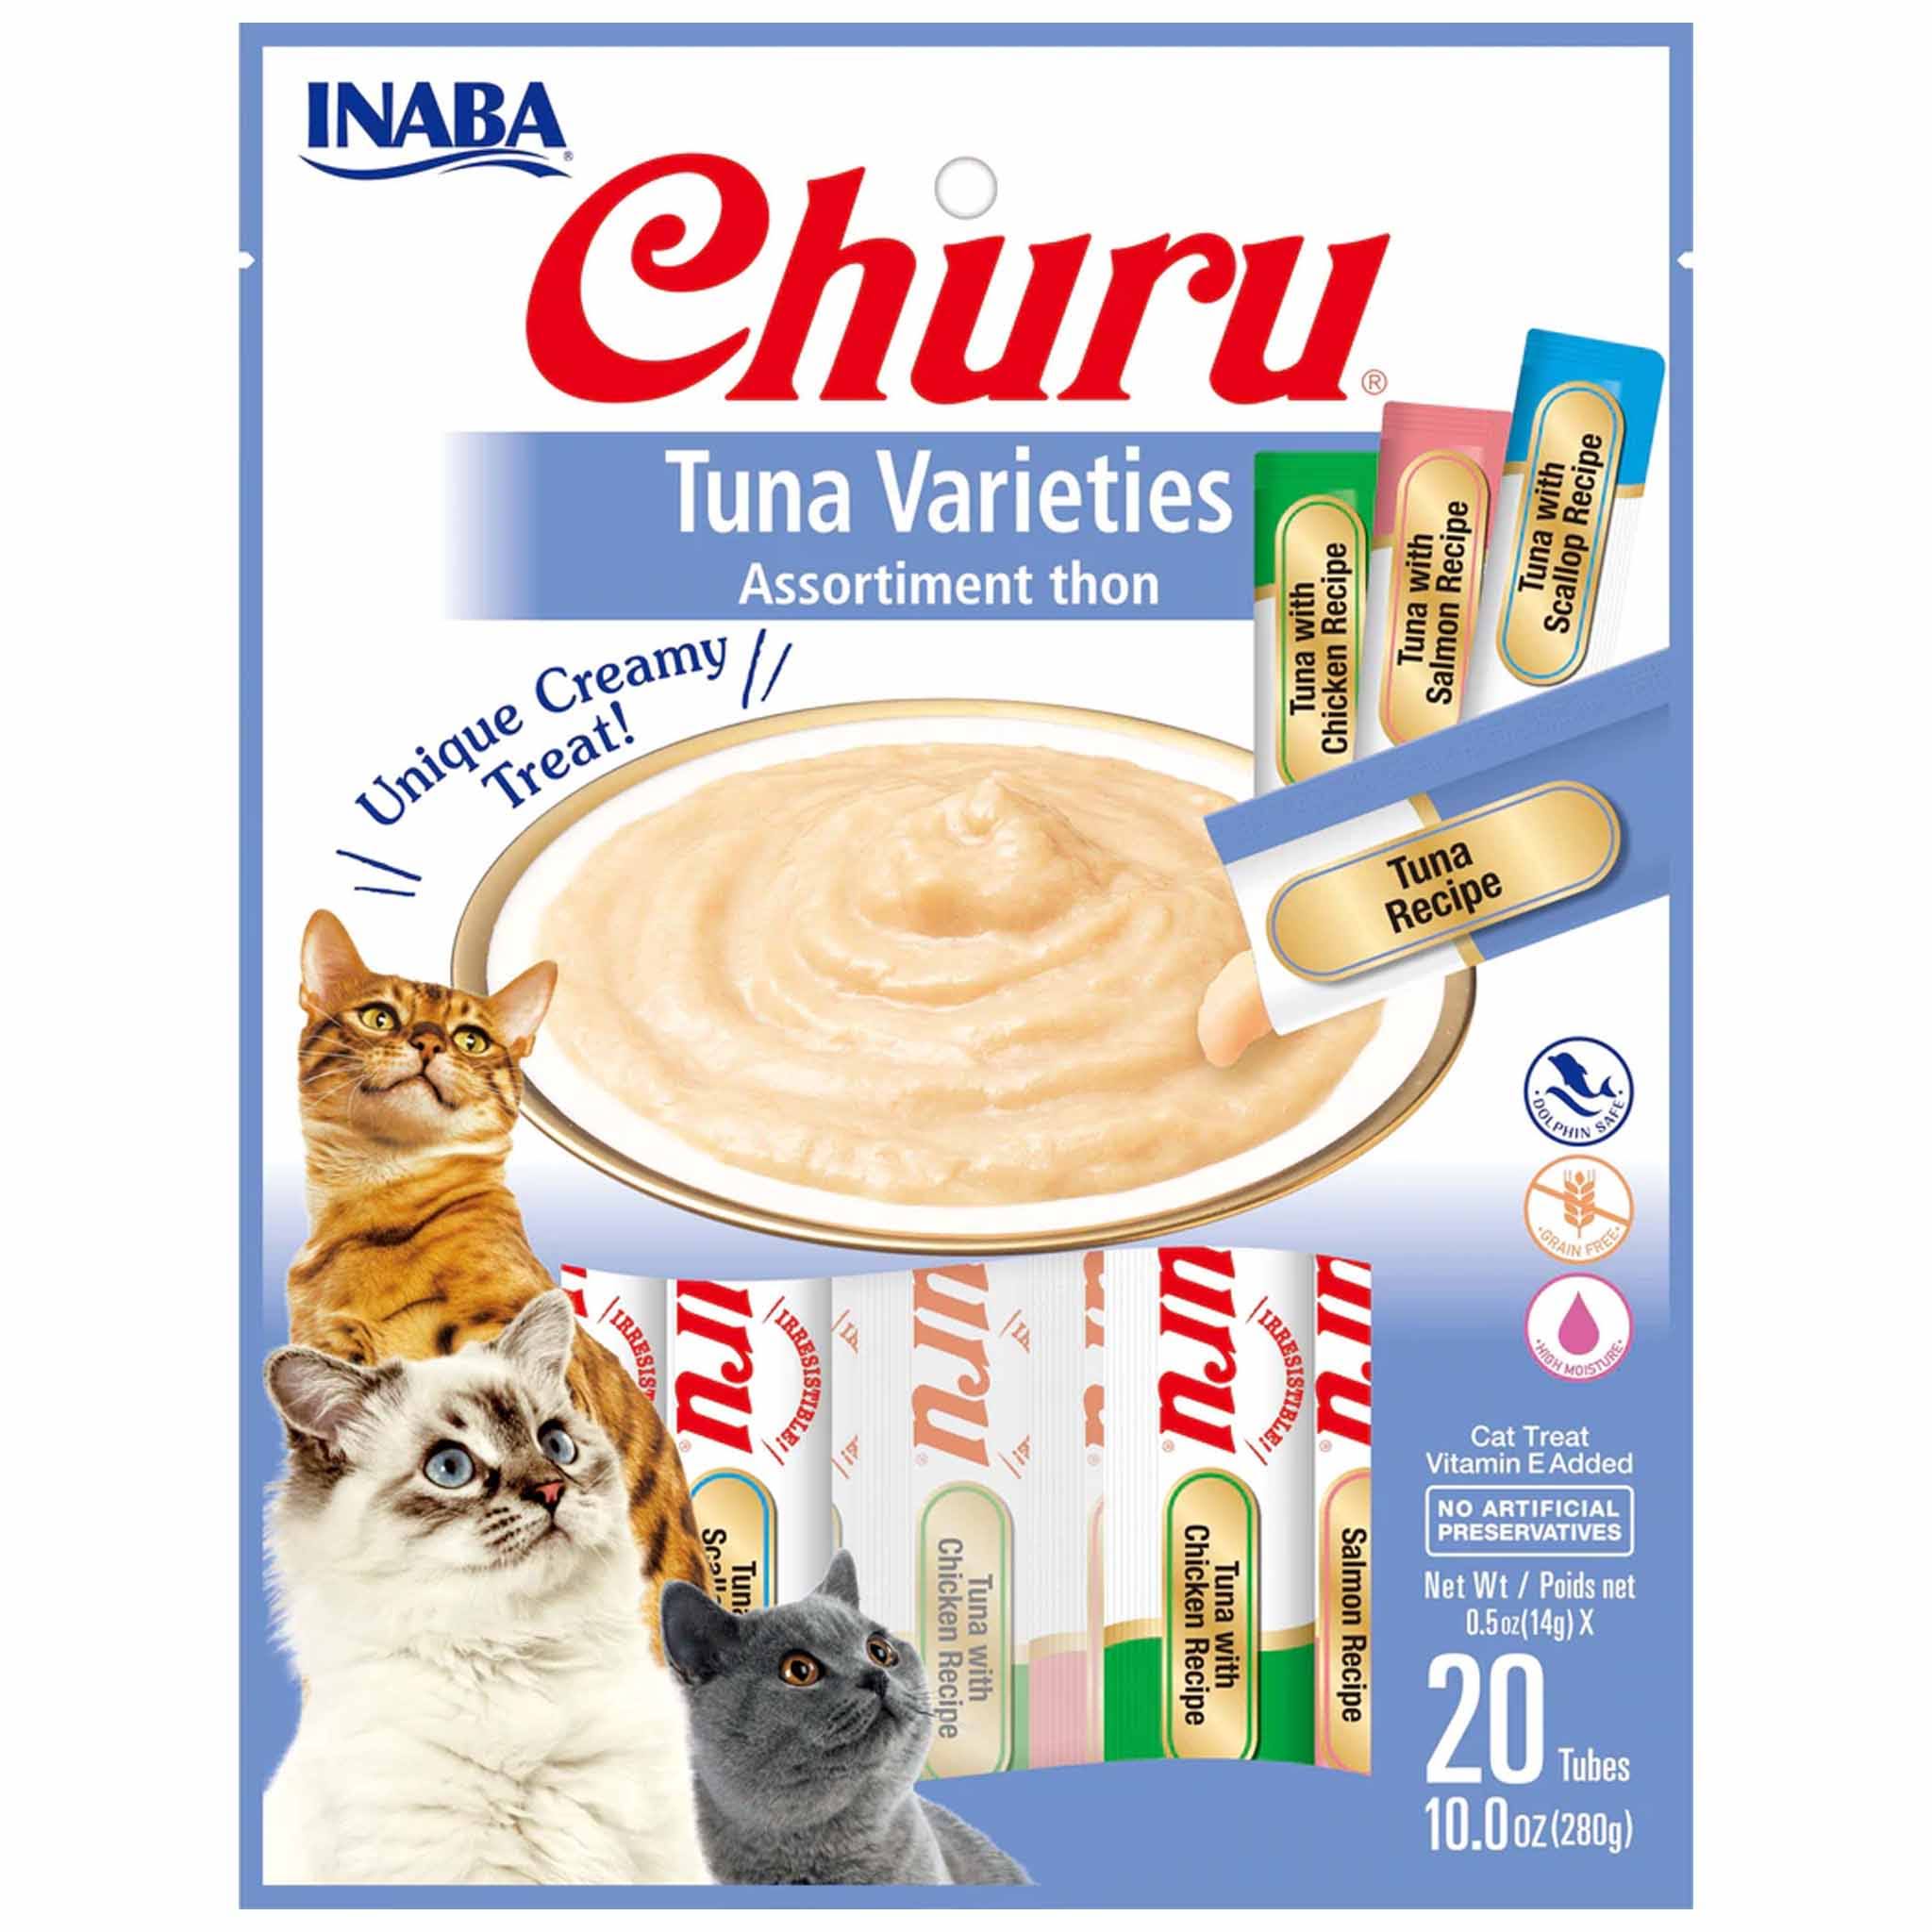 Inaba Churu Tuna Puree Cat Treats Variety Pack, 20 Count